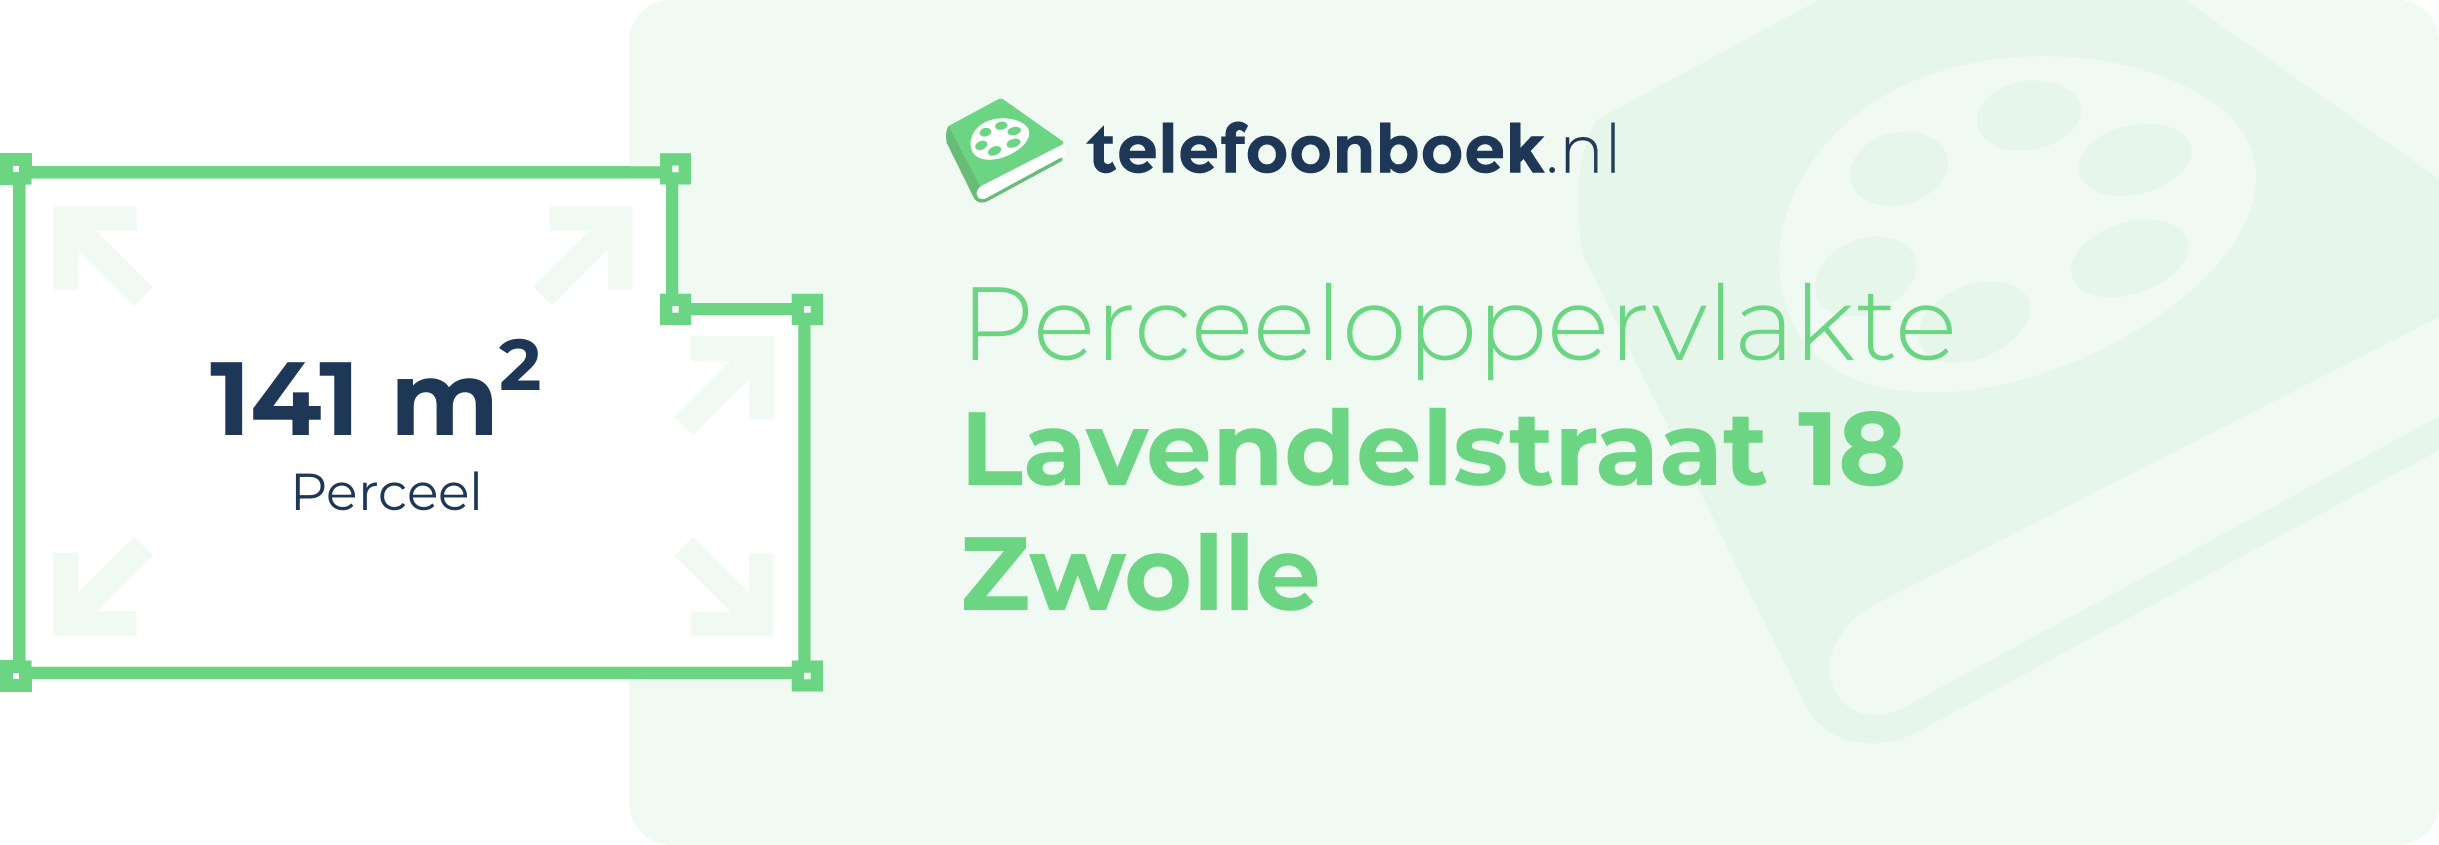 Perceeloppervlakte Lavendelstraat 18 Zwolle